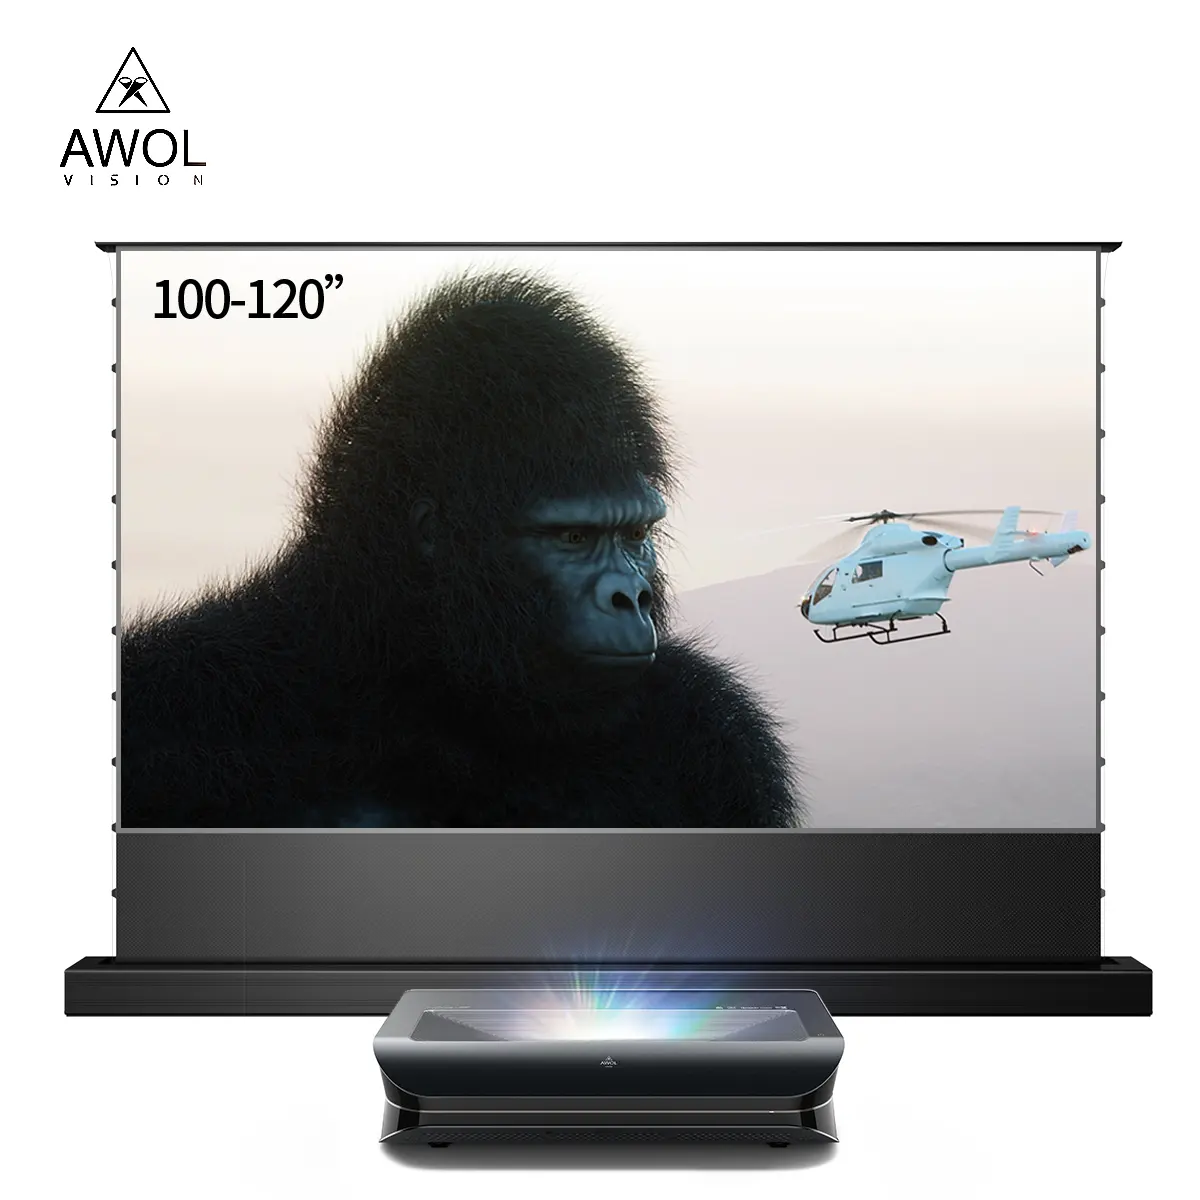 AWOL VISION LTV 3000 pro 150 "ust 3D projecteurs android uhd 4k cinéma vidéo home cinéma projecteur laser à focale ultra courte